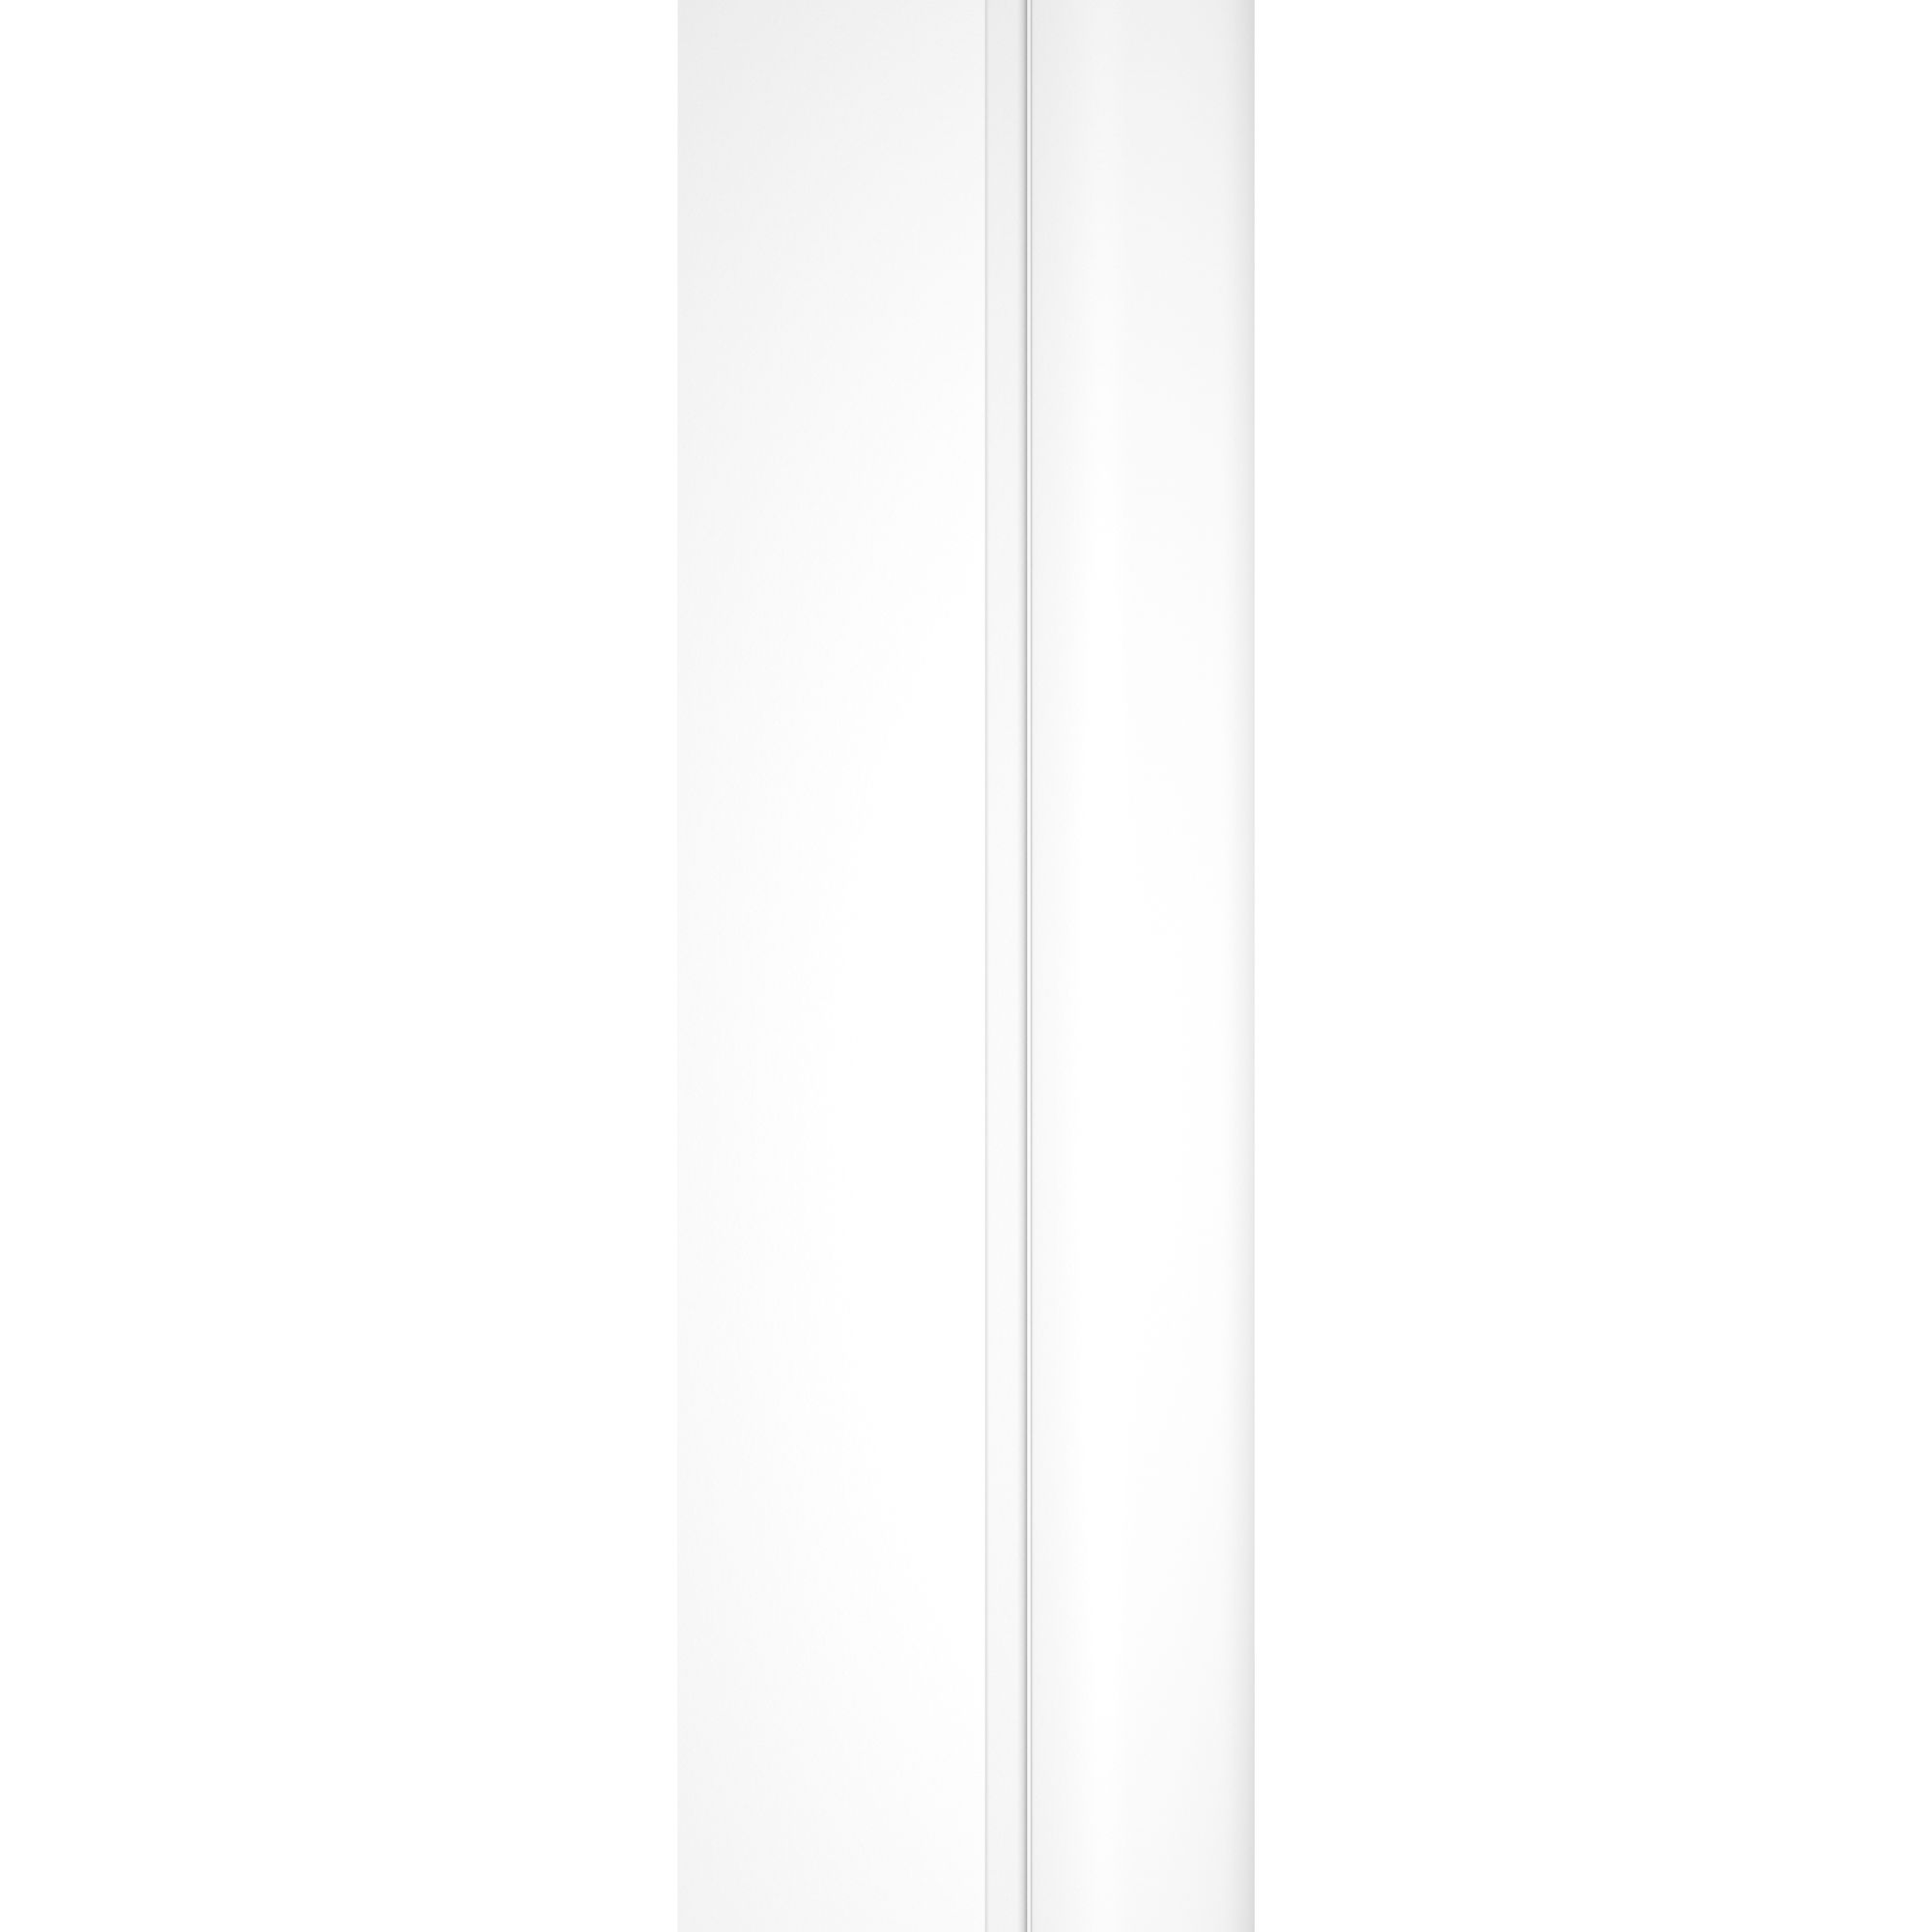 Schulte pare-baignoire rabattable, 80 x 140 cm, verre 5 mm, écran paroi de baignoire mobile 1 volet pivotant, profilé blanc mat 3